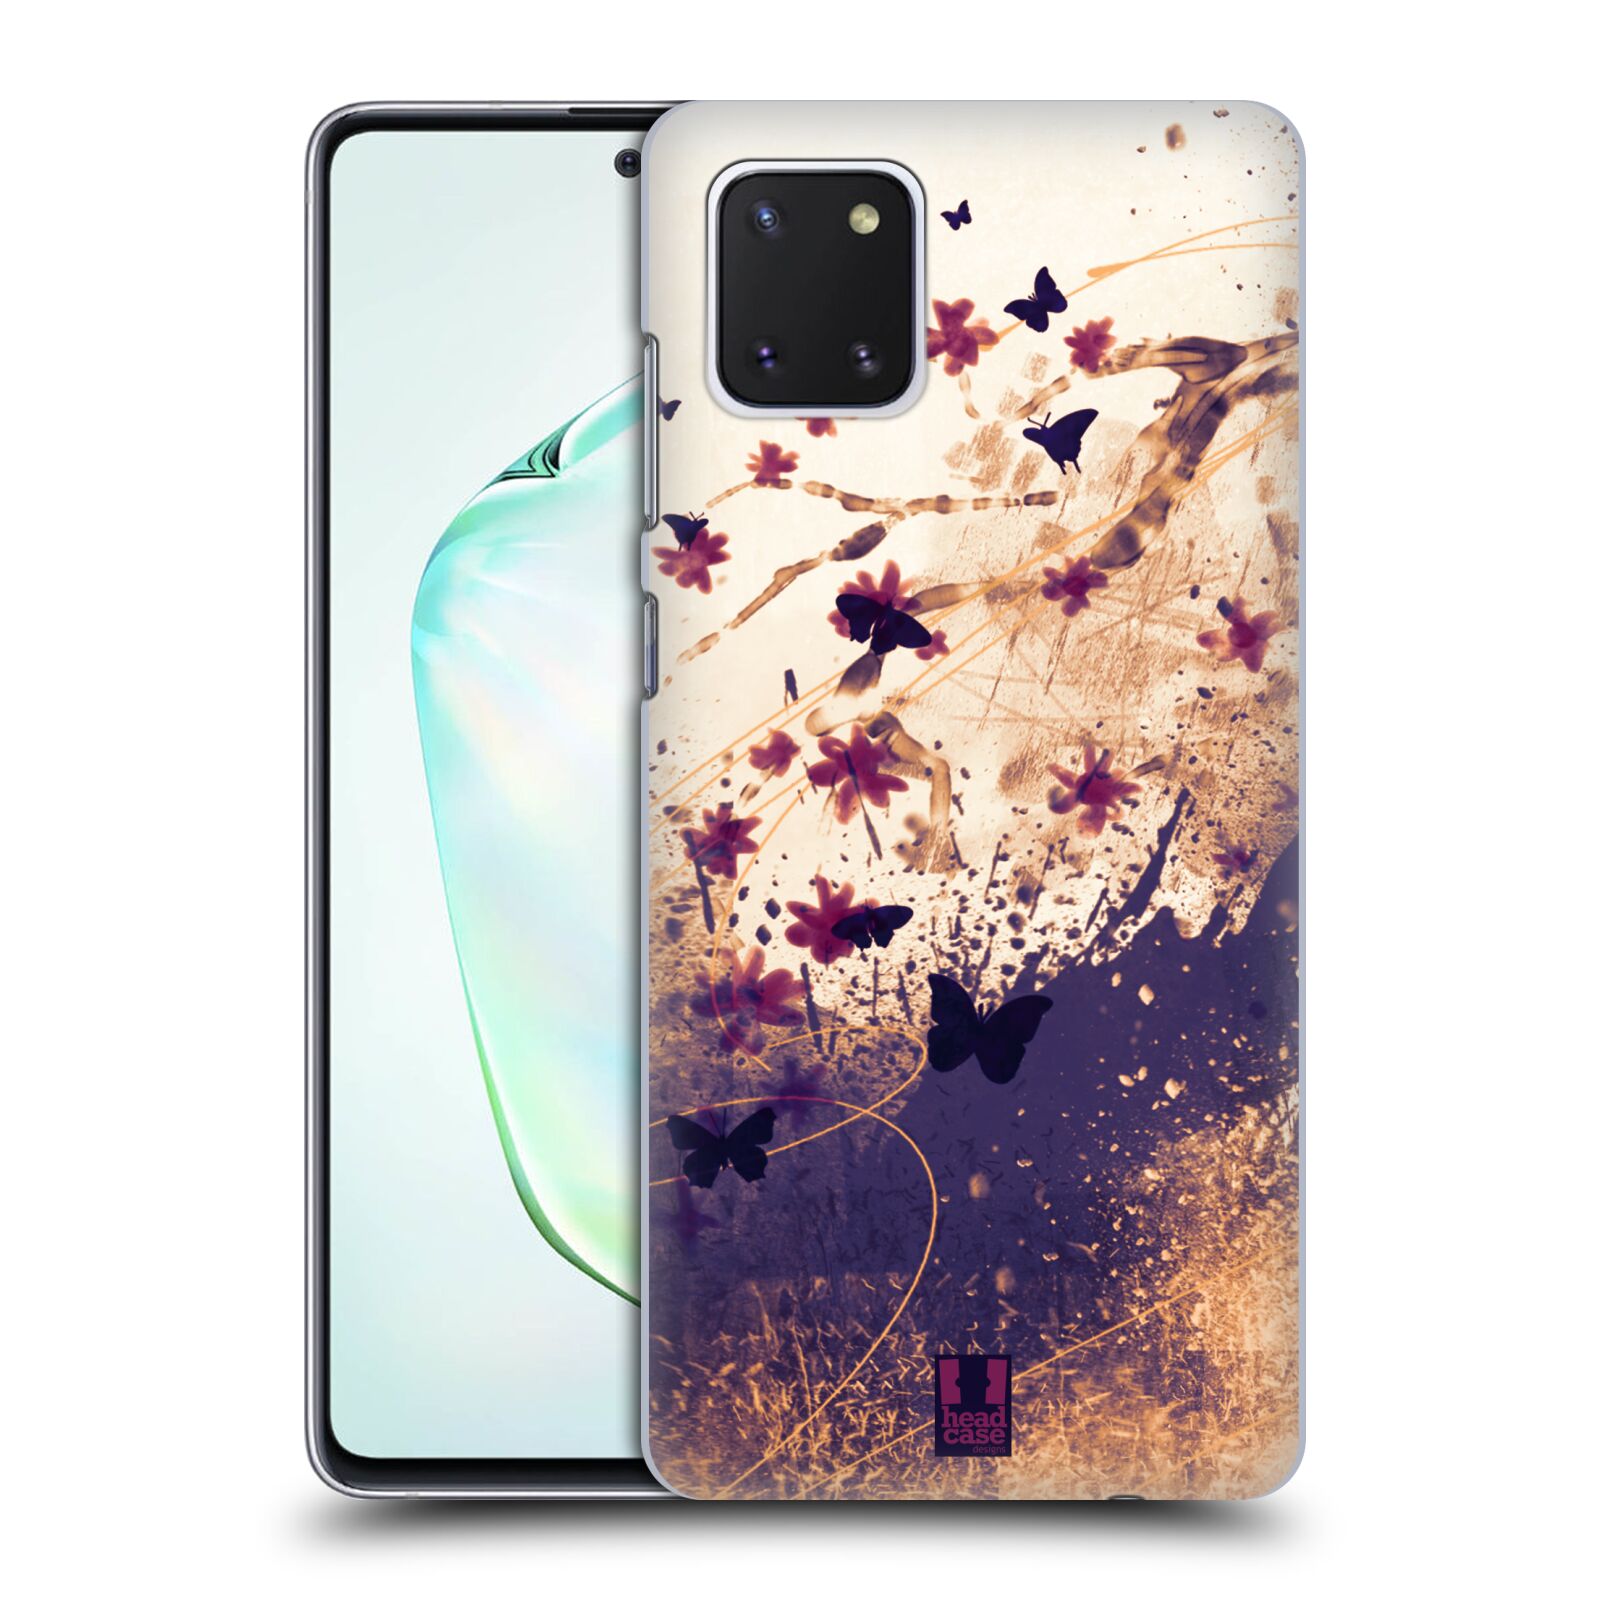 Zadní obal pro mobil Samsung Galaxy Note 10 Lite - HEAD CASE - Barevné květy a motýlci